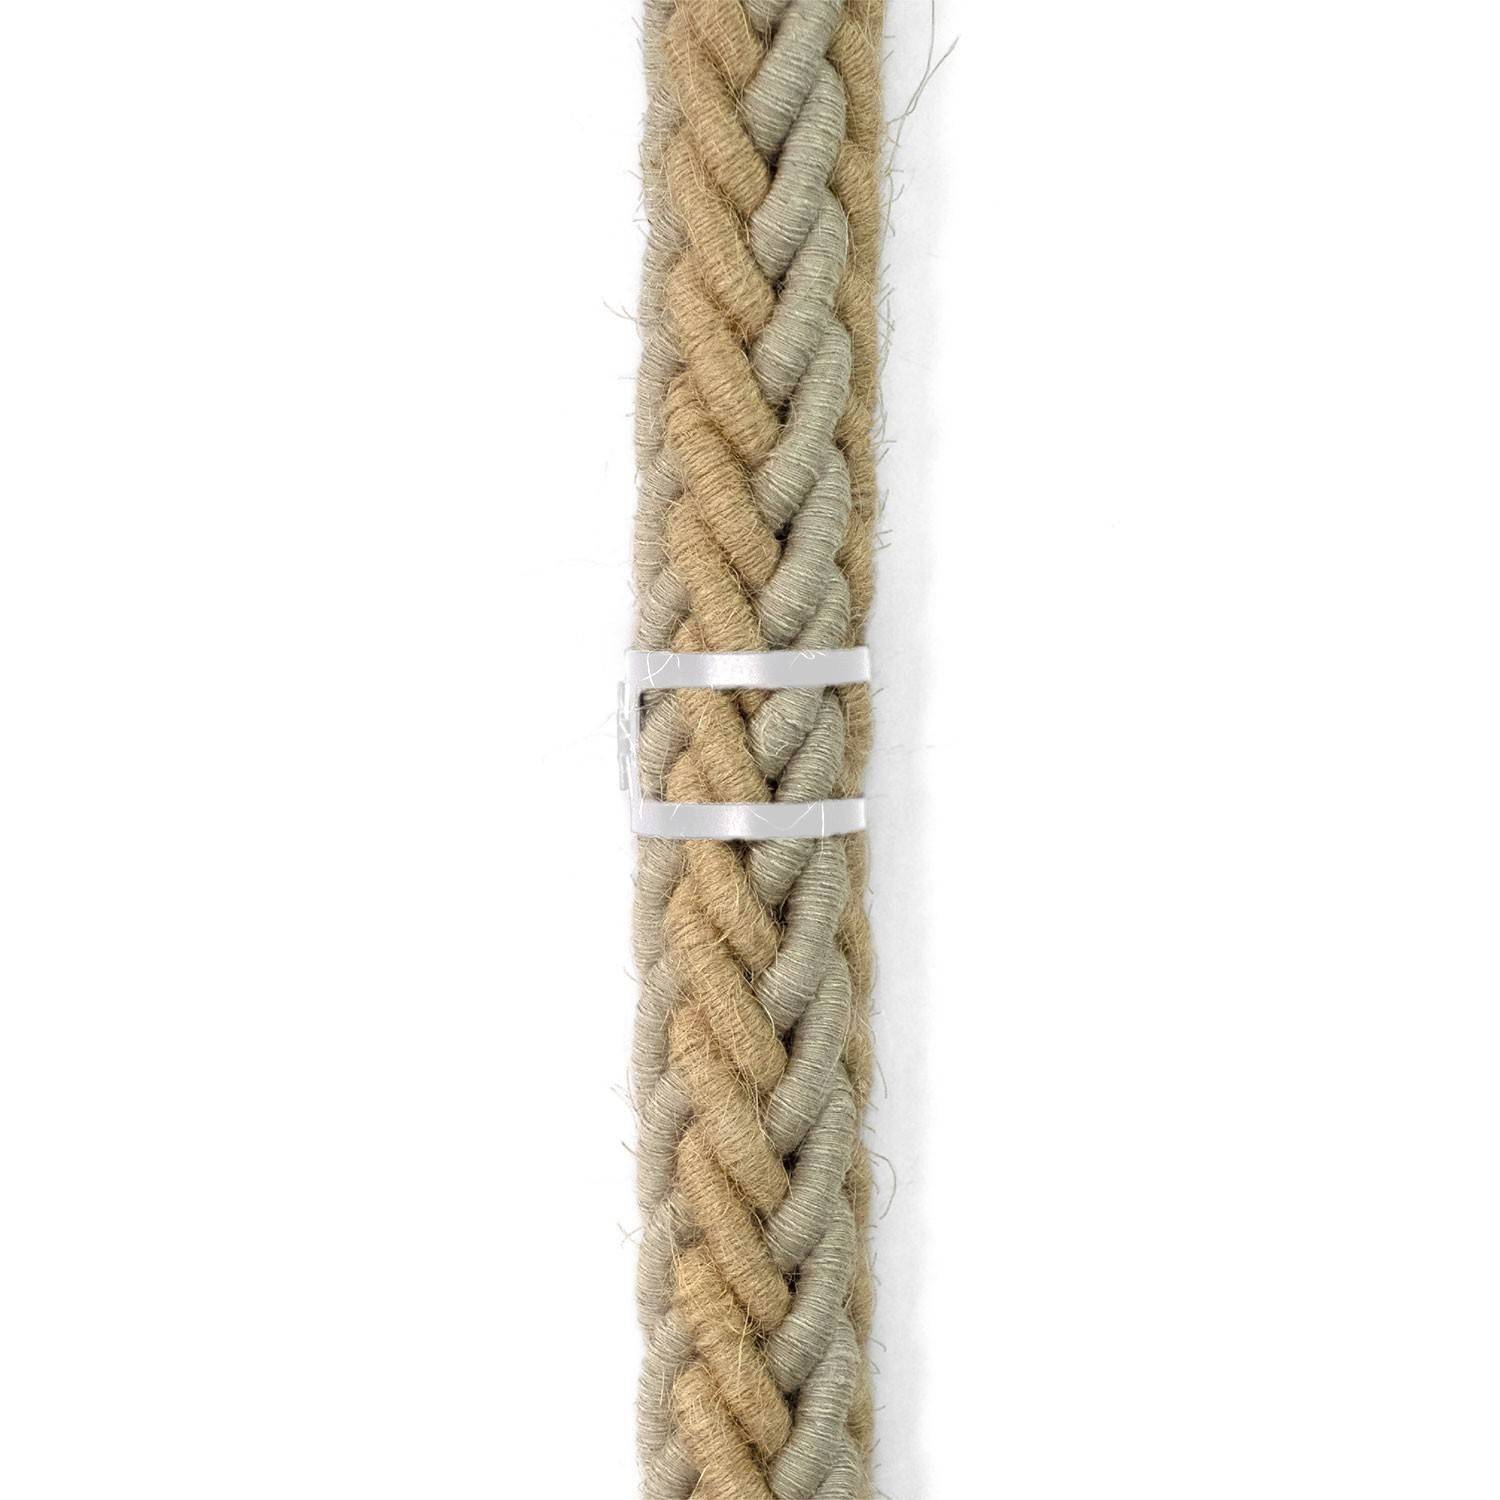 Mola de gravata em metal para cordão elétrico com 30 mm de diâmetro 